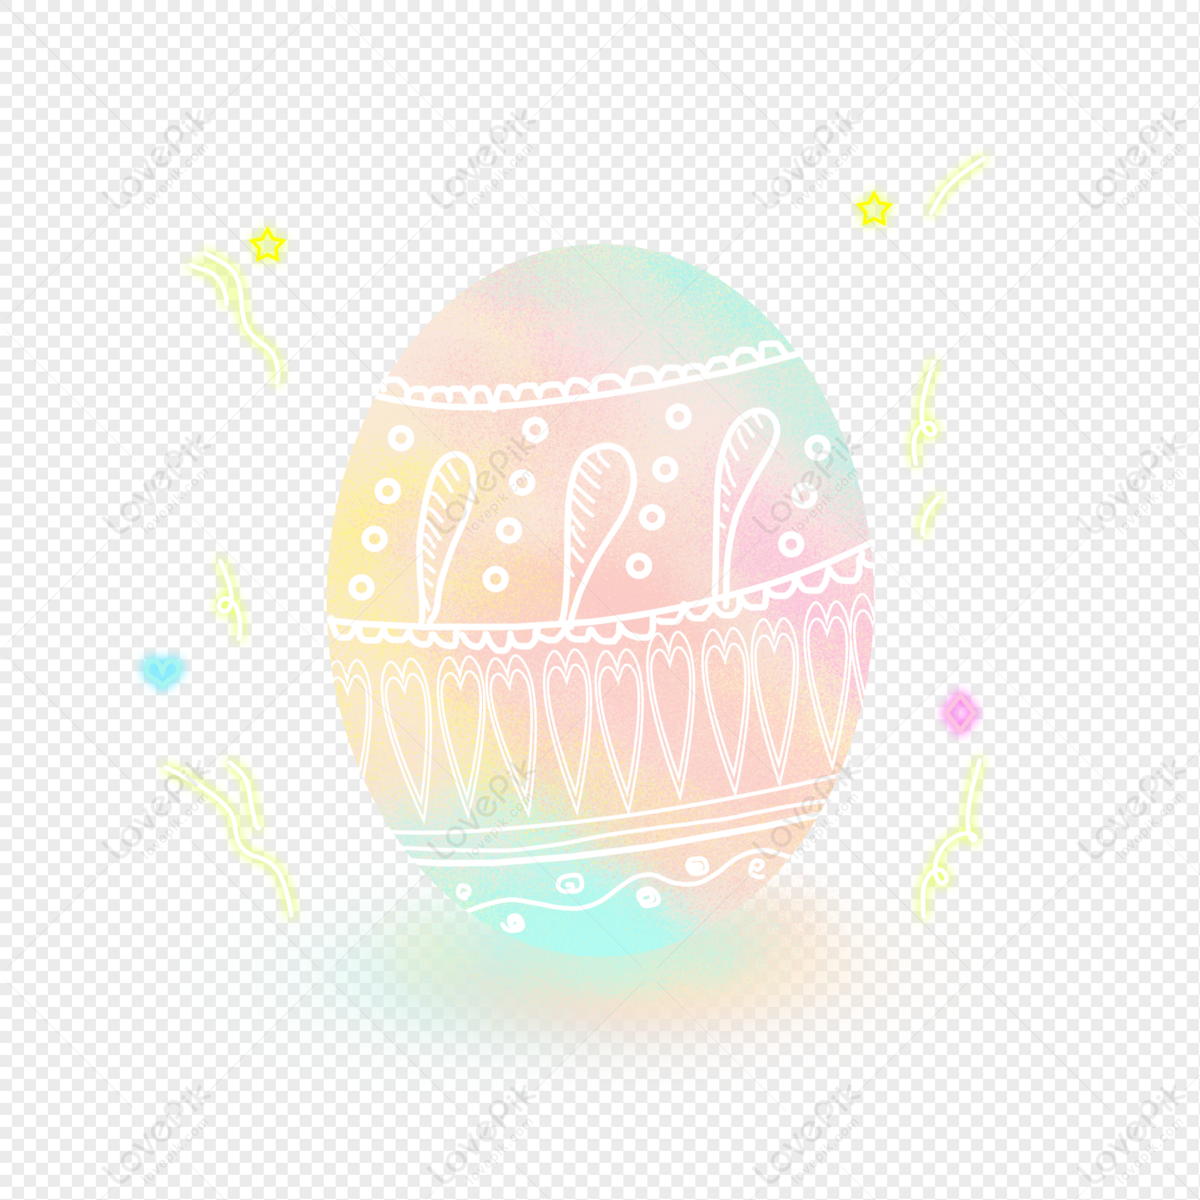 Trứng phục sinh đáng yêu là một trong những biểu tượng ấn tượng nhất của Lễ Phục Sinh. Hãy cùng xem hình ảnh về những trứng phục sinh đáng yêu được trang trí đầy màu sắc và hình dáng ngộ nghĩnh để cảm nhận những giây phút đầy vui vẻ trong ngày Lễ Phục Sinh.